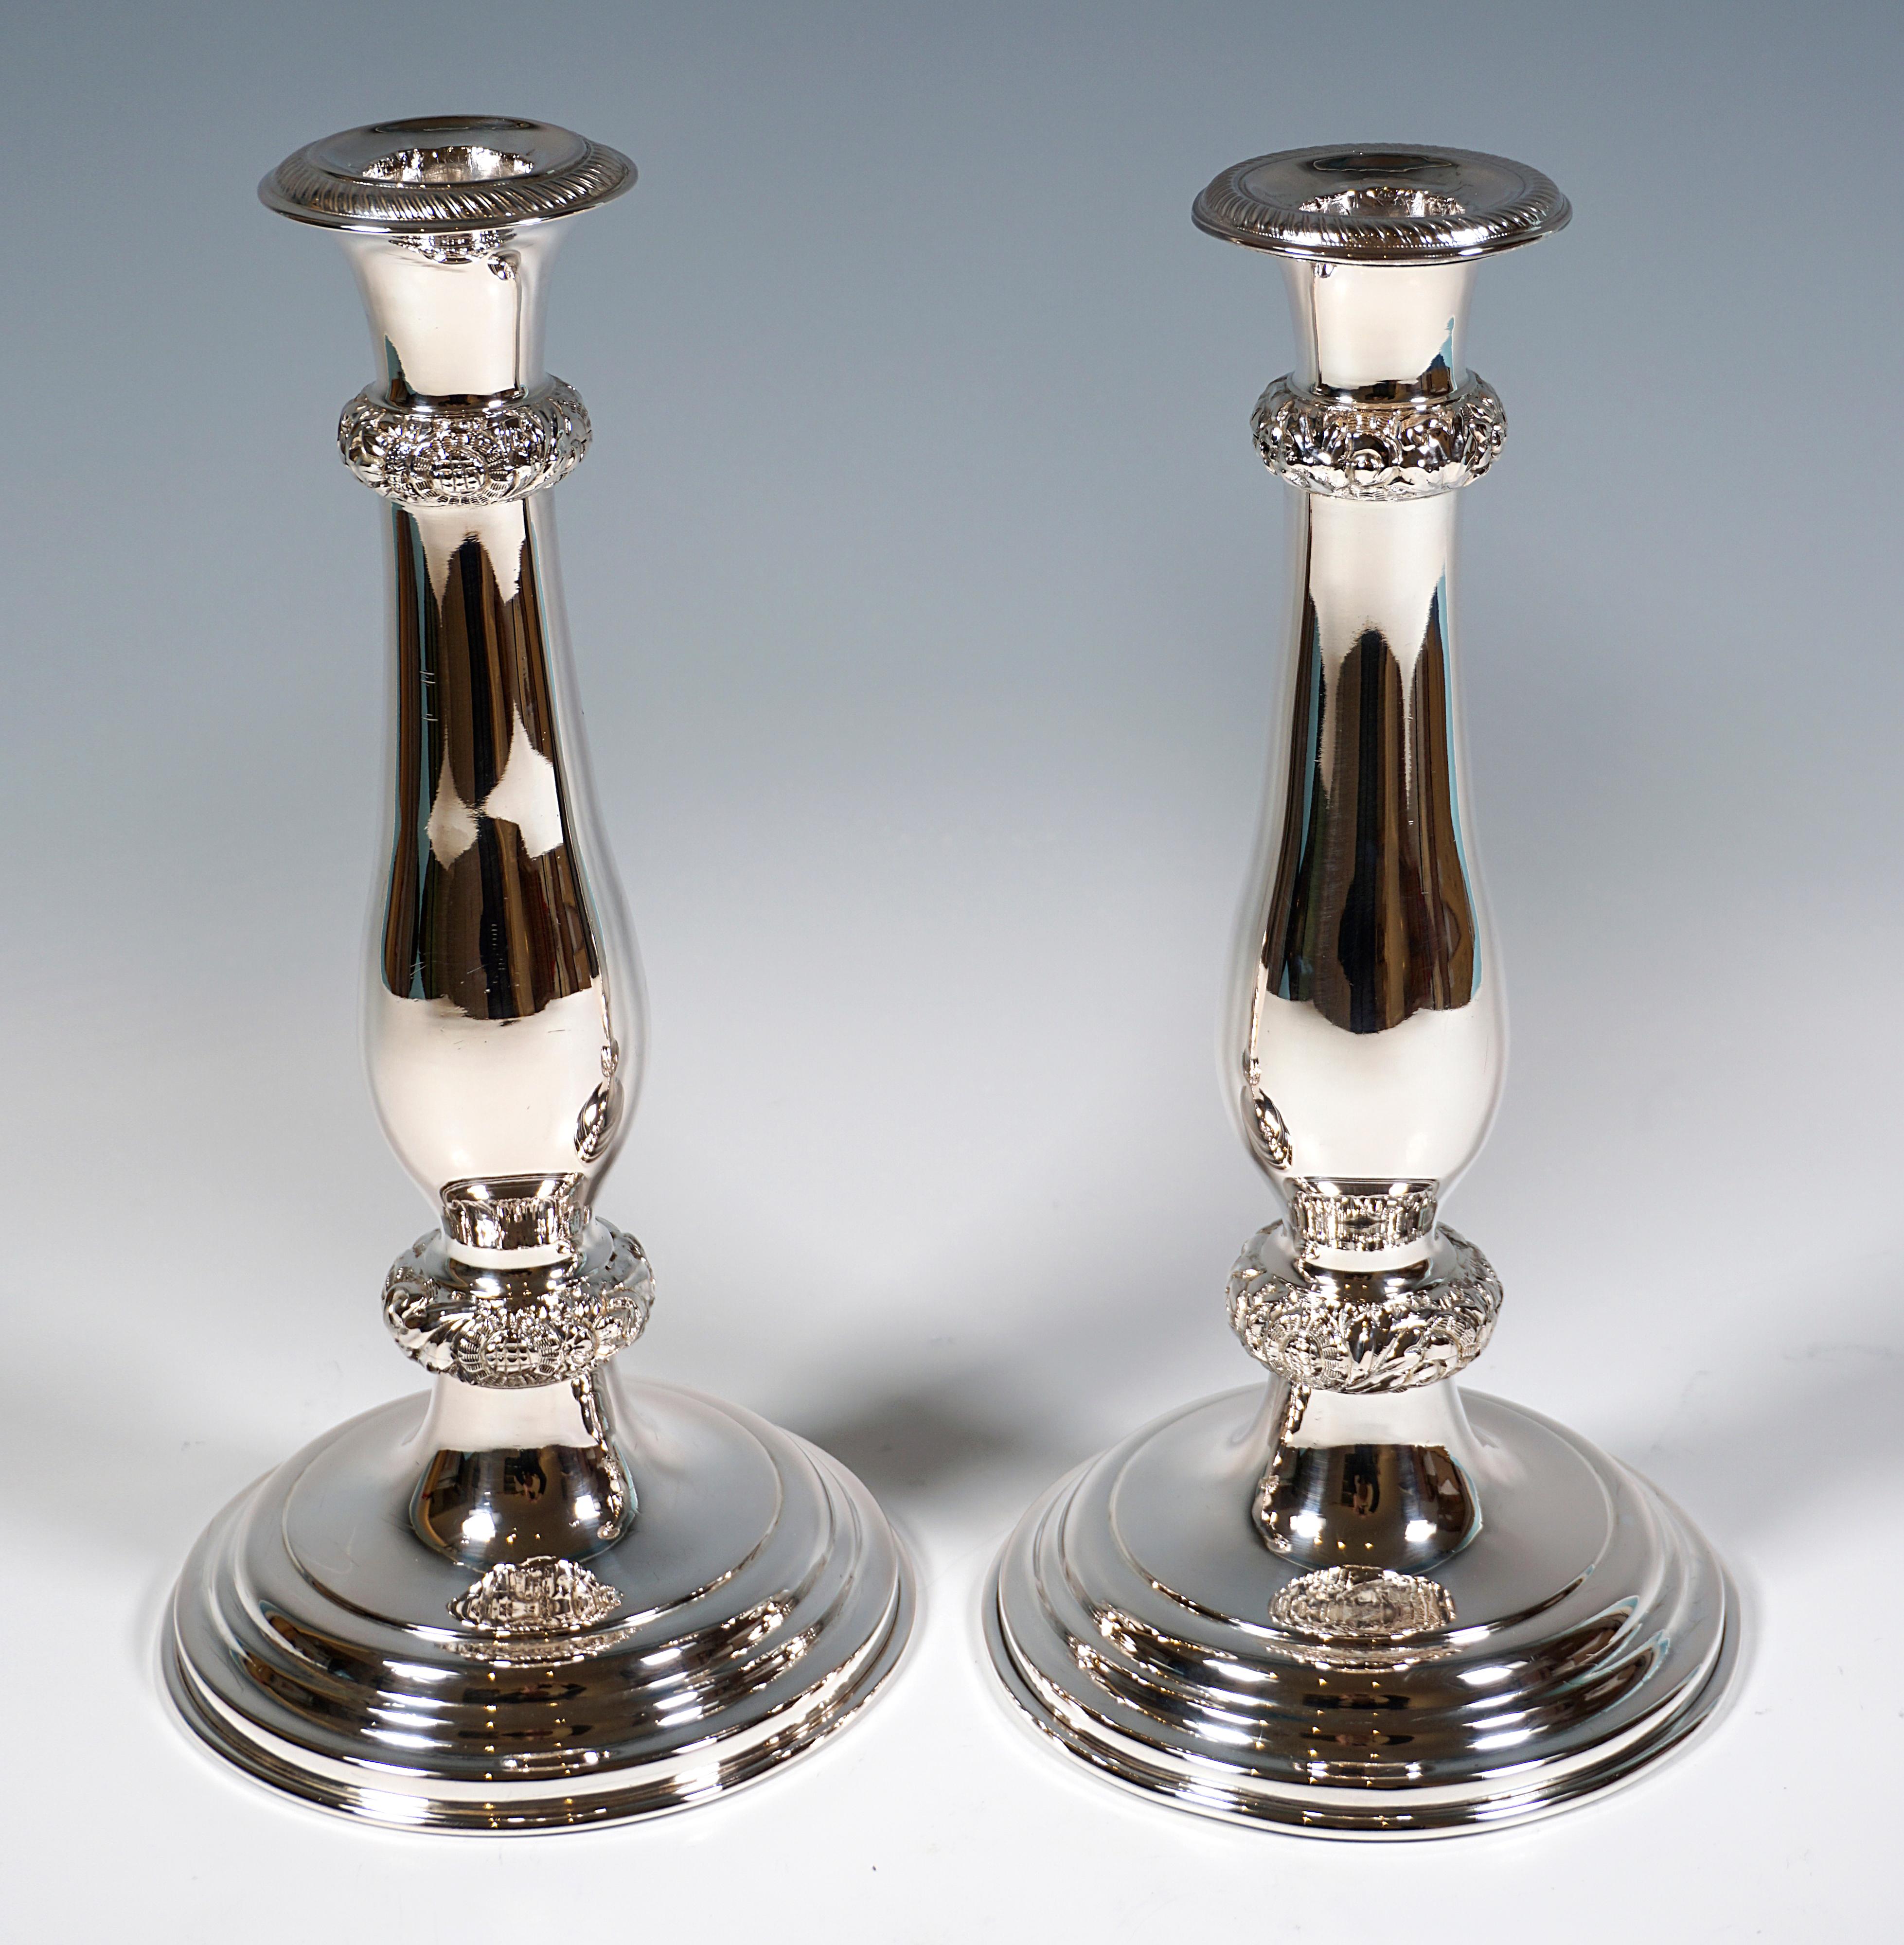 Deux chandeliers festifs en argent Biedermeier sur un pied rond en forme de dôme à gradins avec une tige lisse en forme de balustre, des anneaux perlés décorés de fleurs et de Rocaille en relief, des becs en forme de vase avec un ruban en cordon en